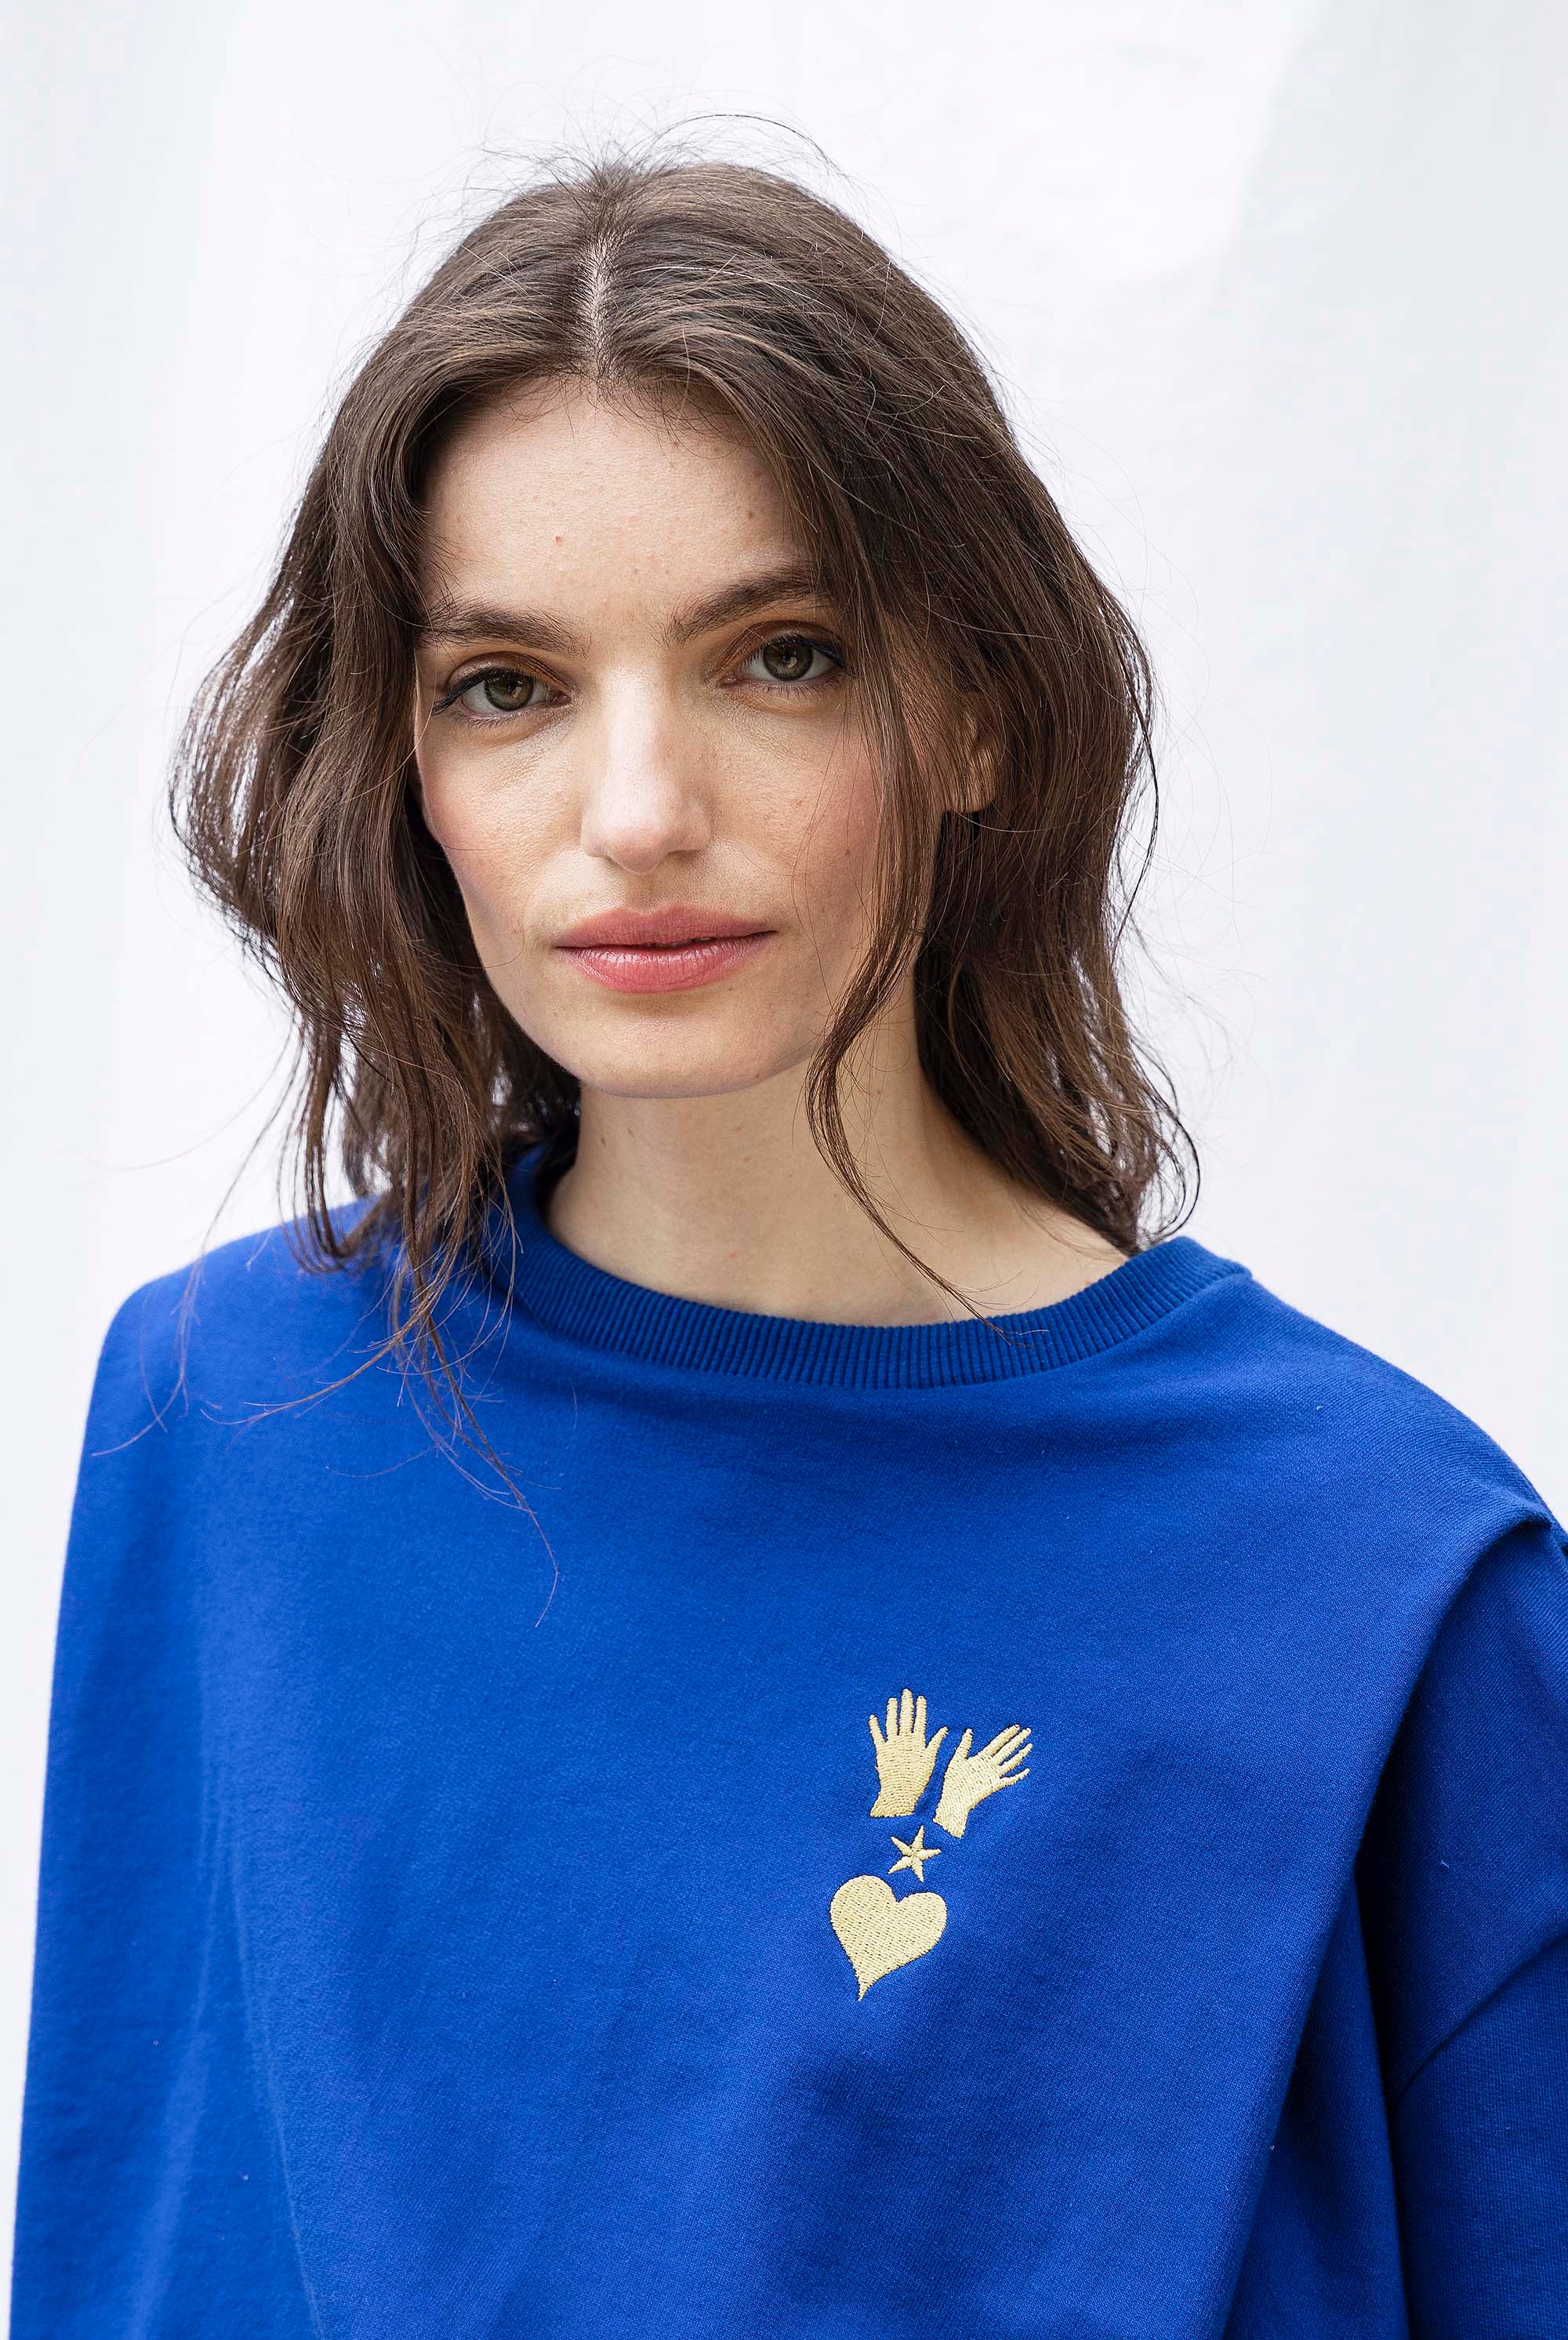 Sweatshirt Alyssa Manos Bleu Saphir sweatshirt femme, pièce basique et vêtement cocooning du quotidien